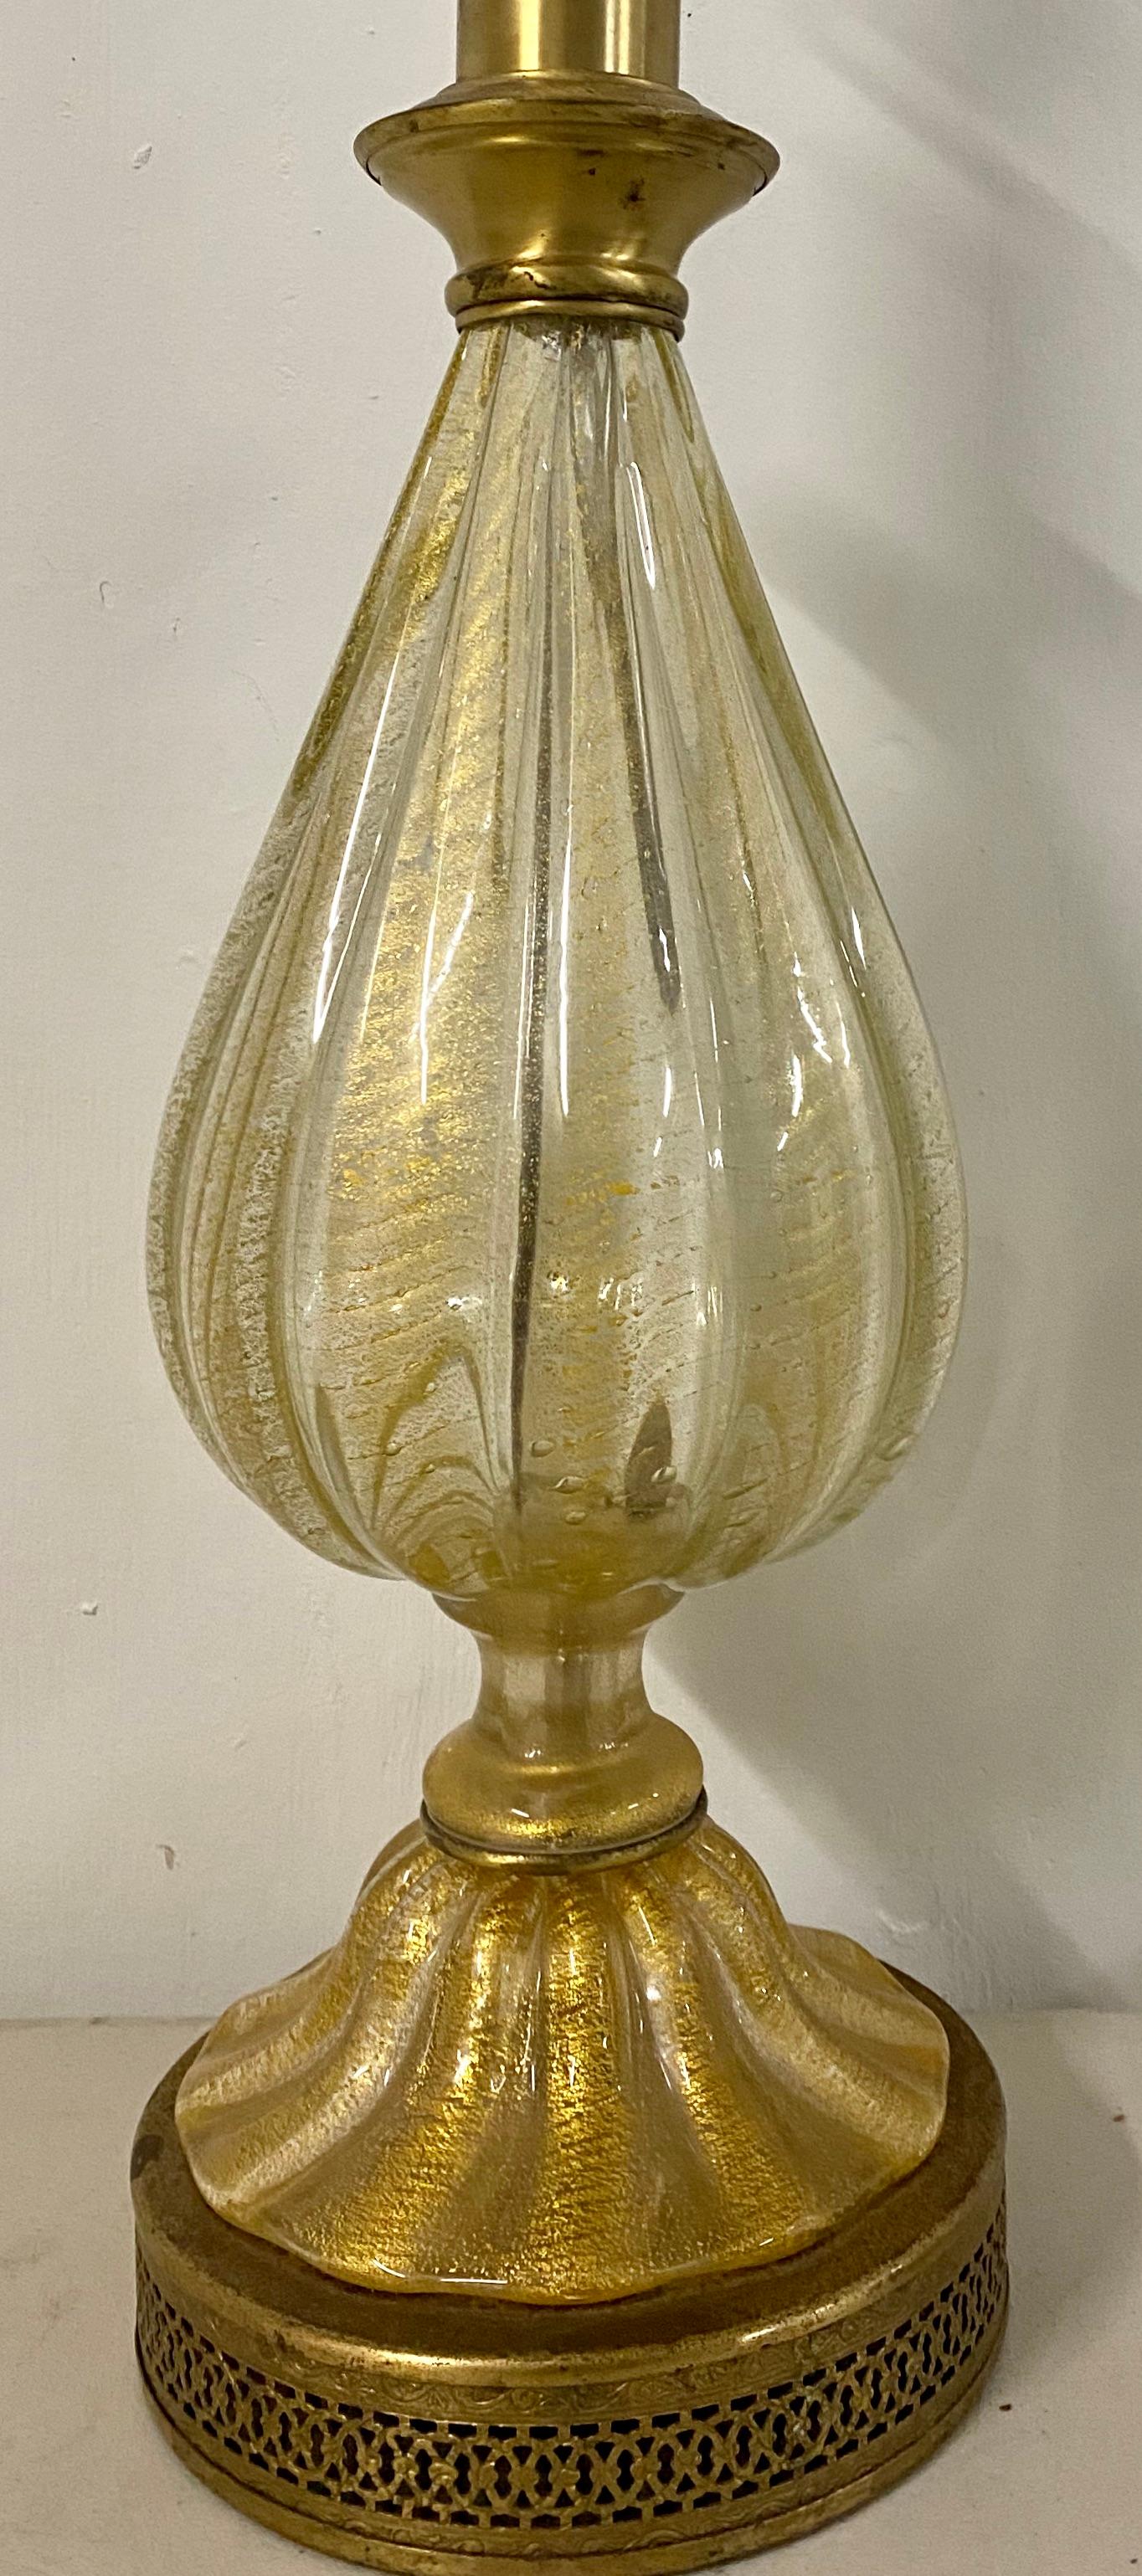 Moderne mundgeblasene Goldstaublampe aus der Jahrhundertmitte, um 1950

Handgeblasene Lampe mit goldbestäubter Innenseite auf einem Messingfuß

Maße: 7.5